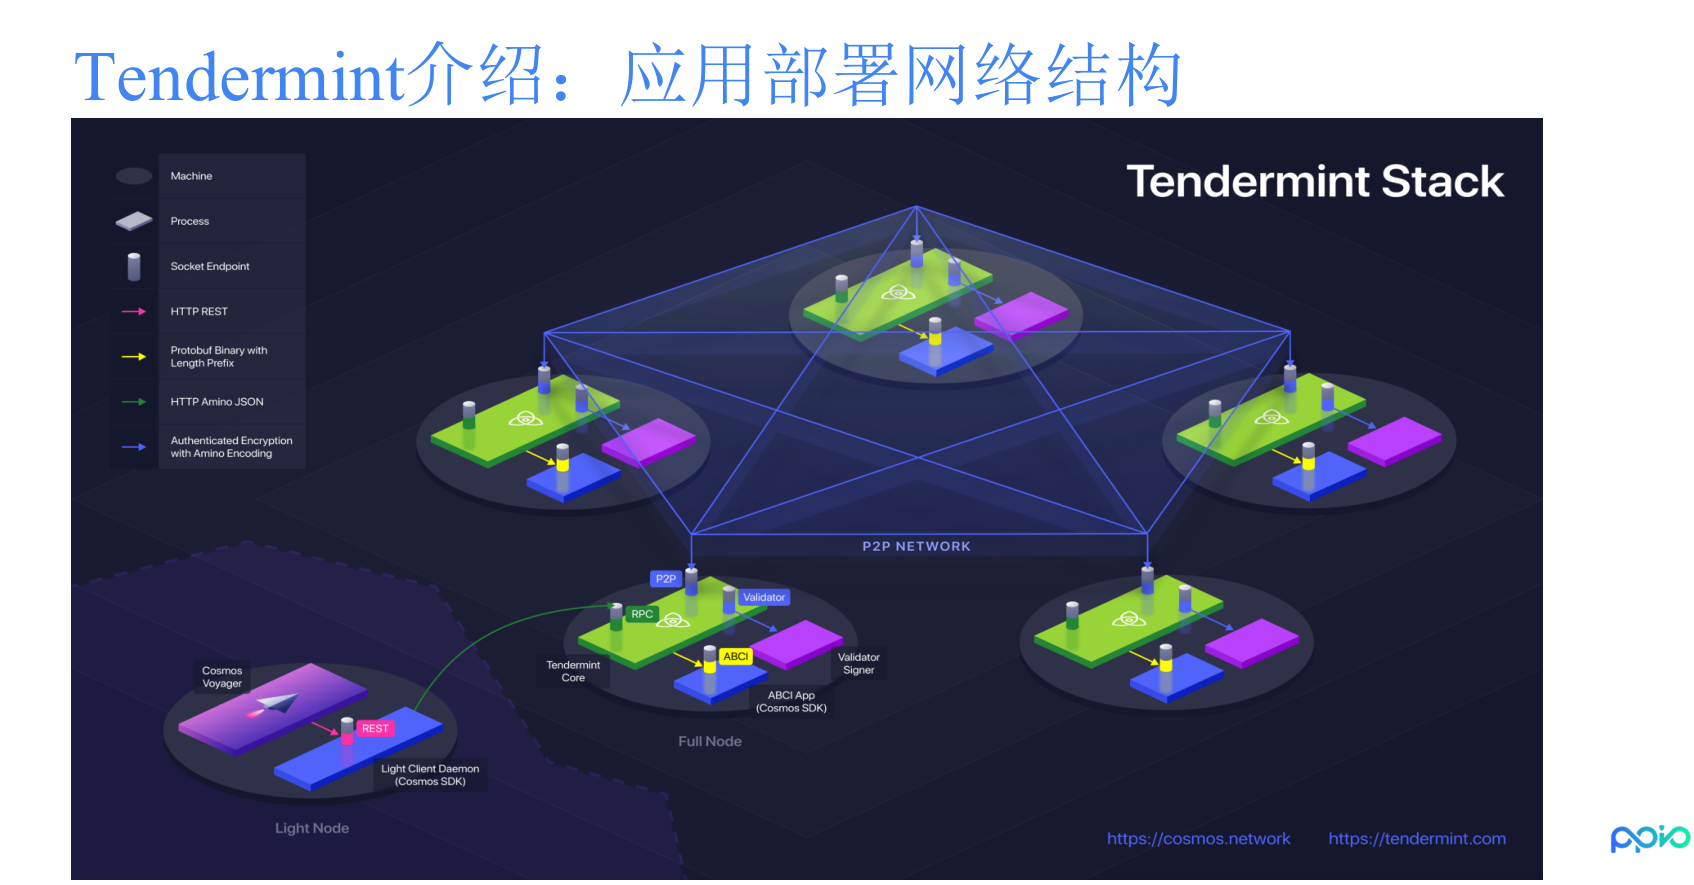 【技术工坊55期】吴寿鹤:Tendermint介绍及实战分析插图6